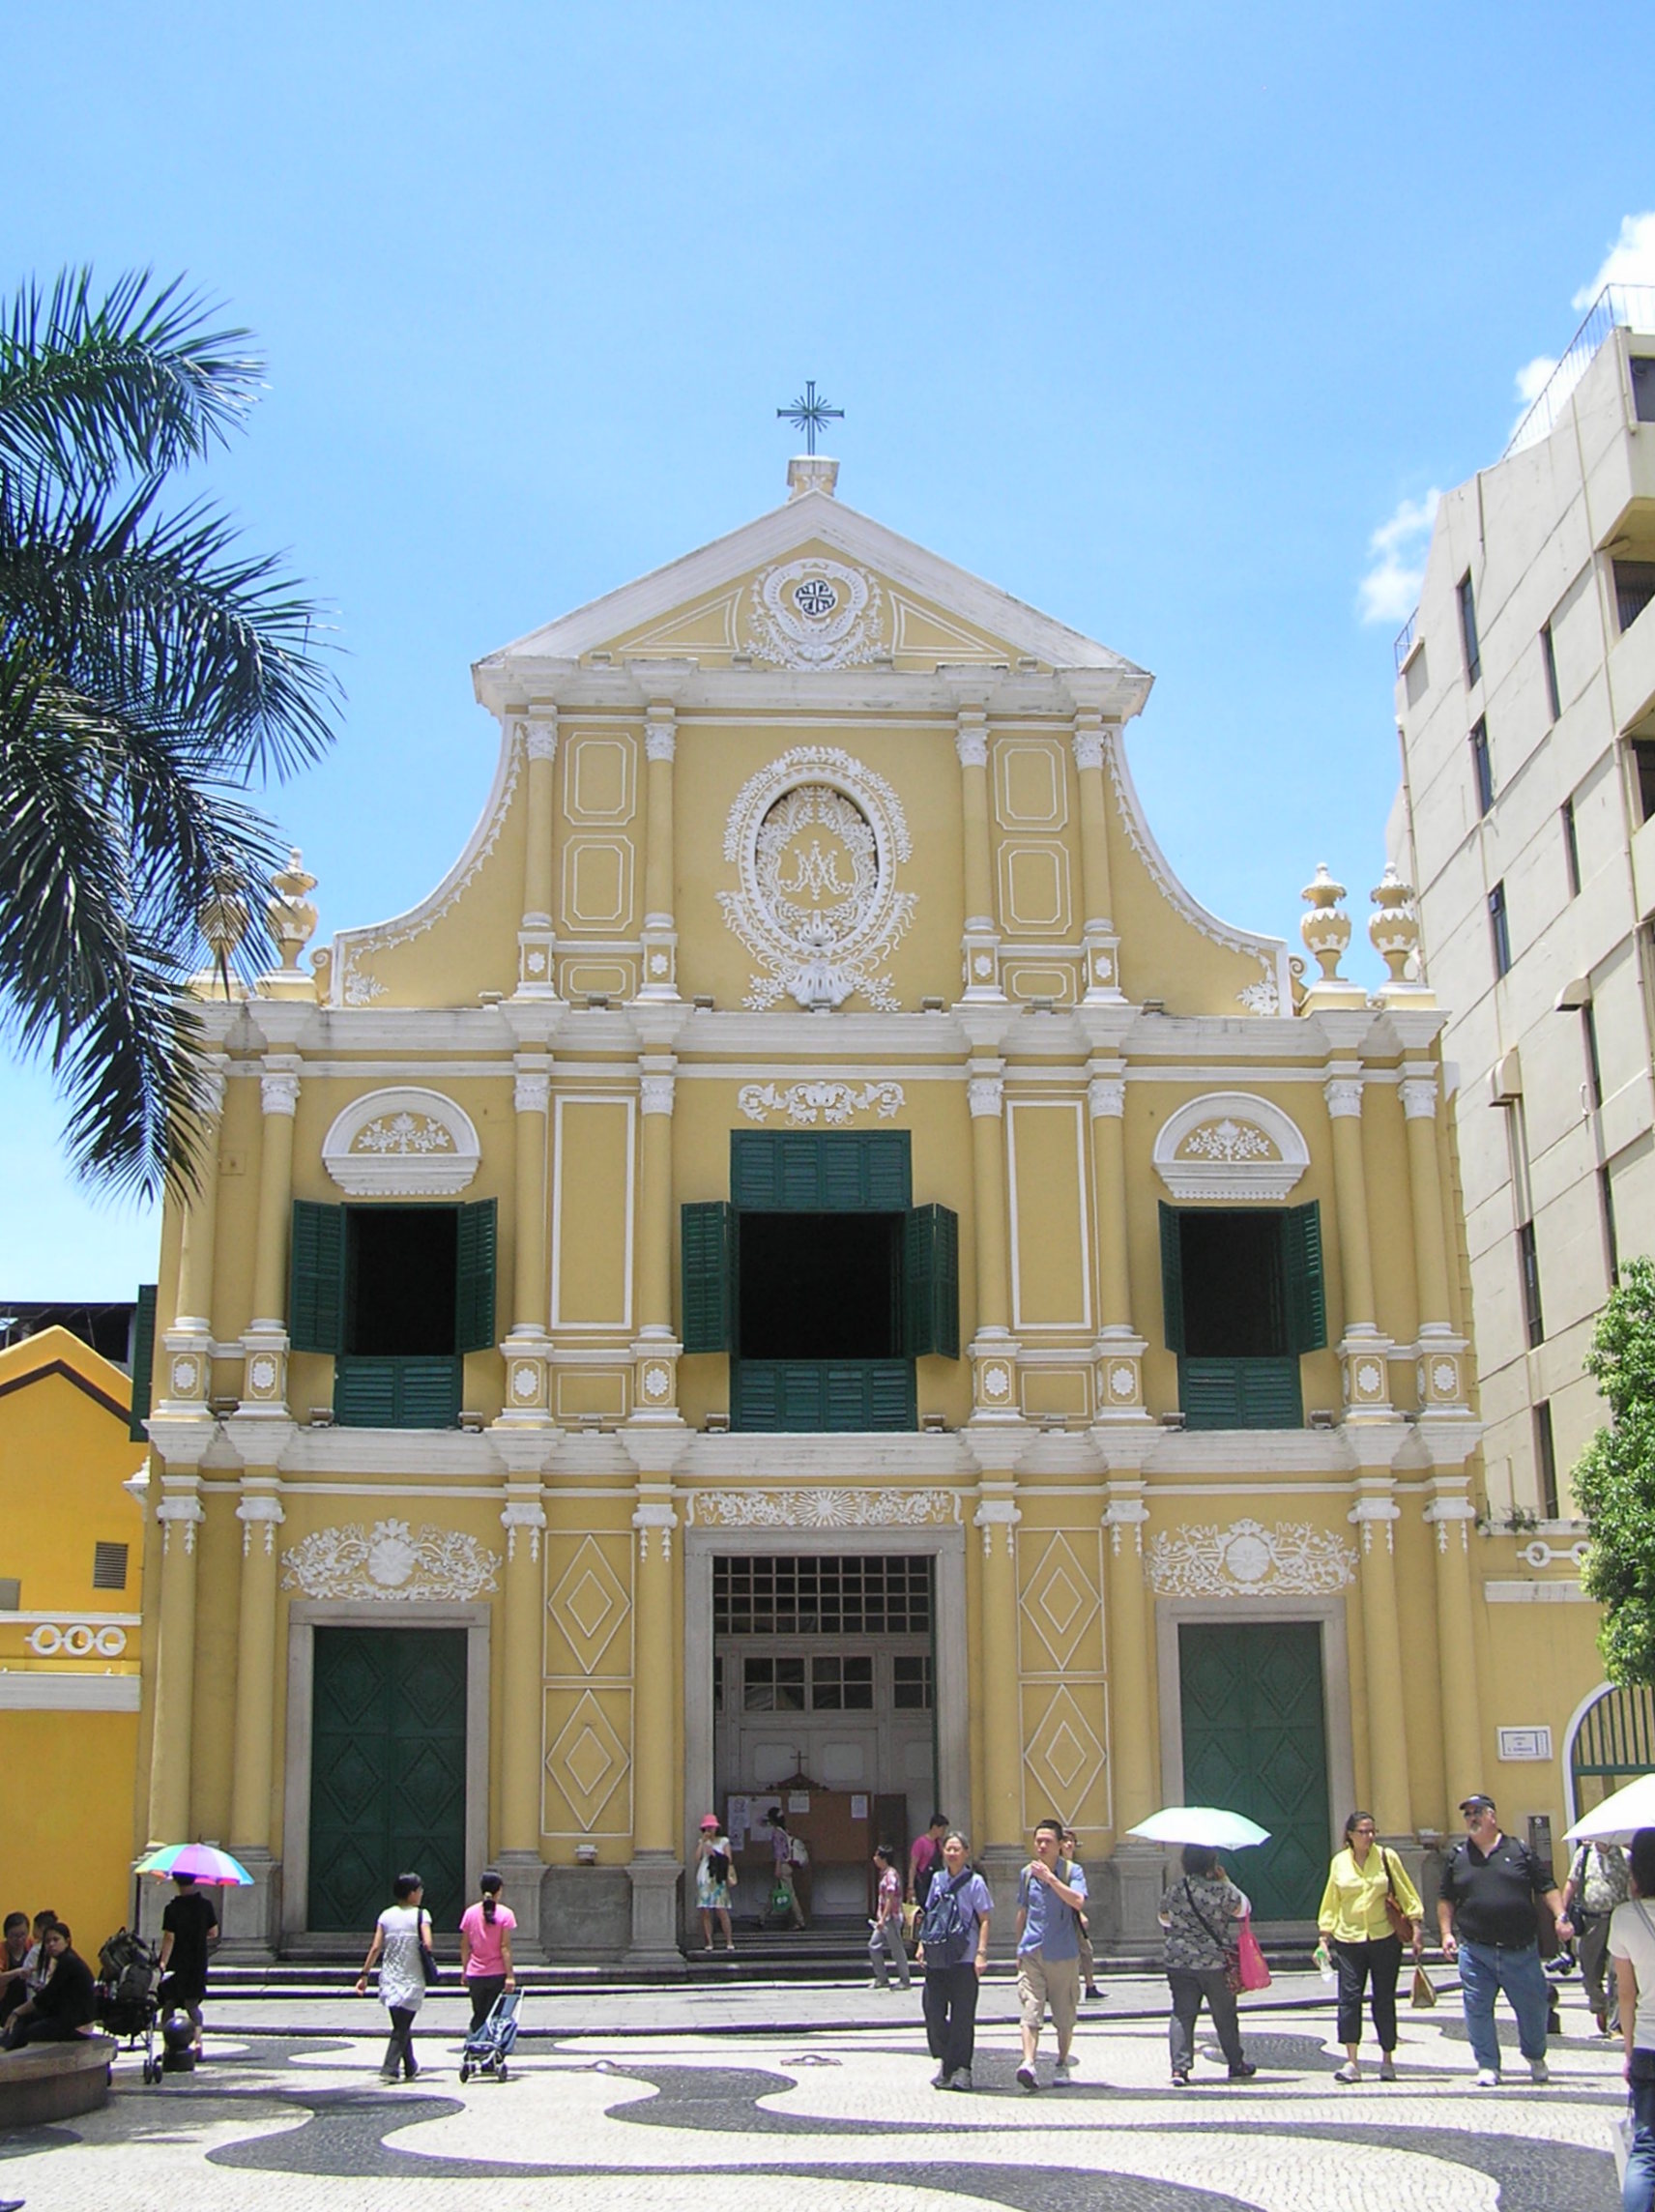 St. Dominic's Church macau